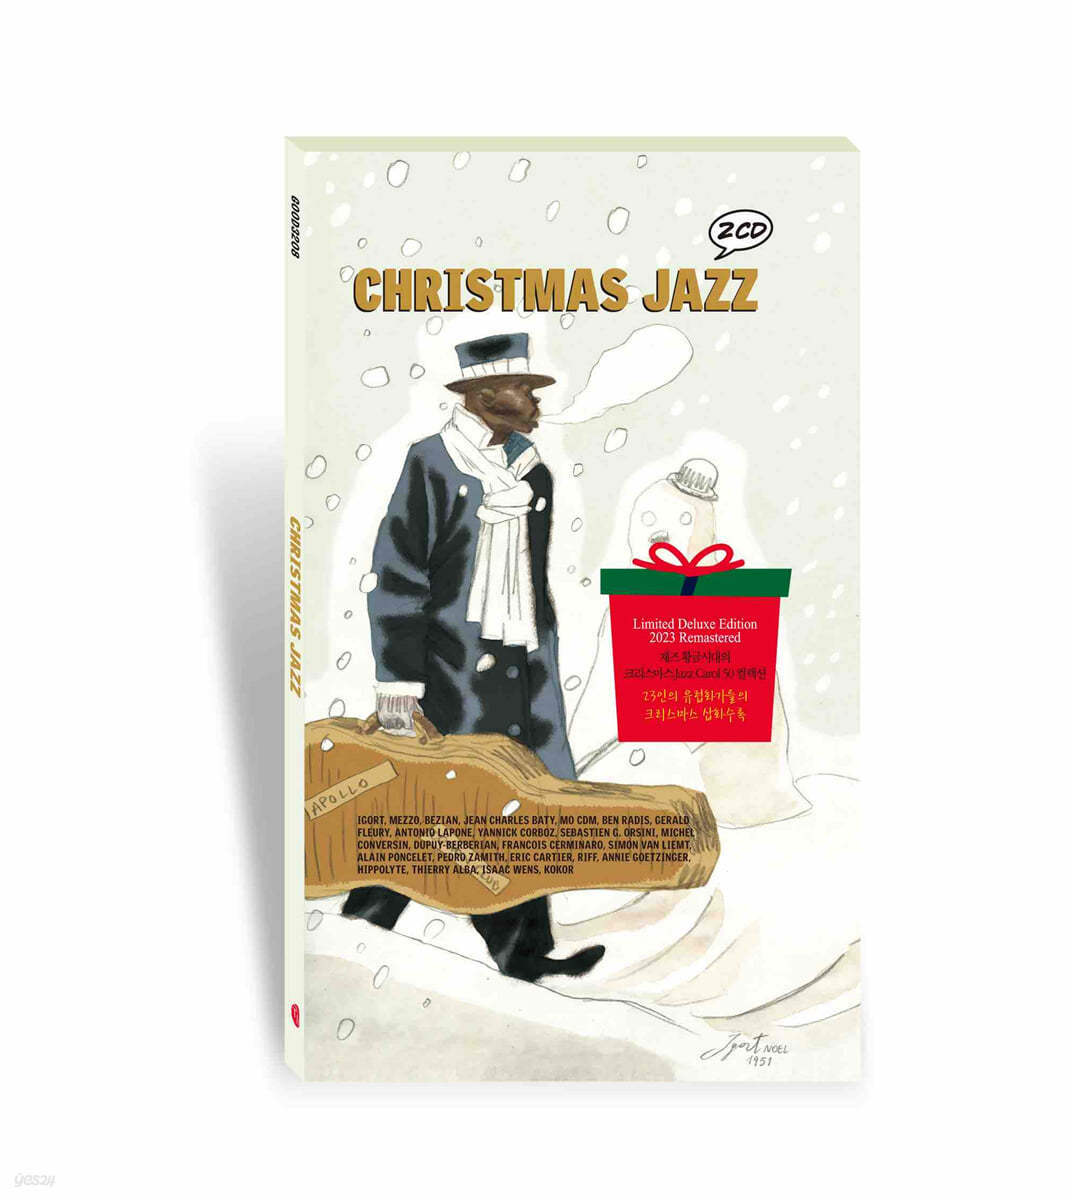 크리스마스 재즈 캐럴 모음집 (Christmas Jazz) 